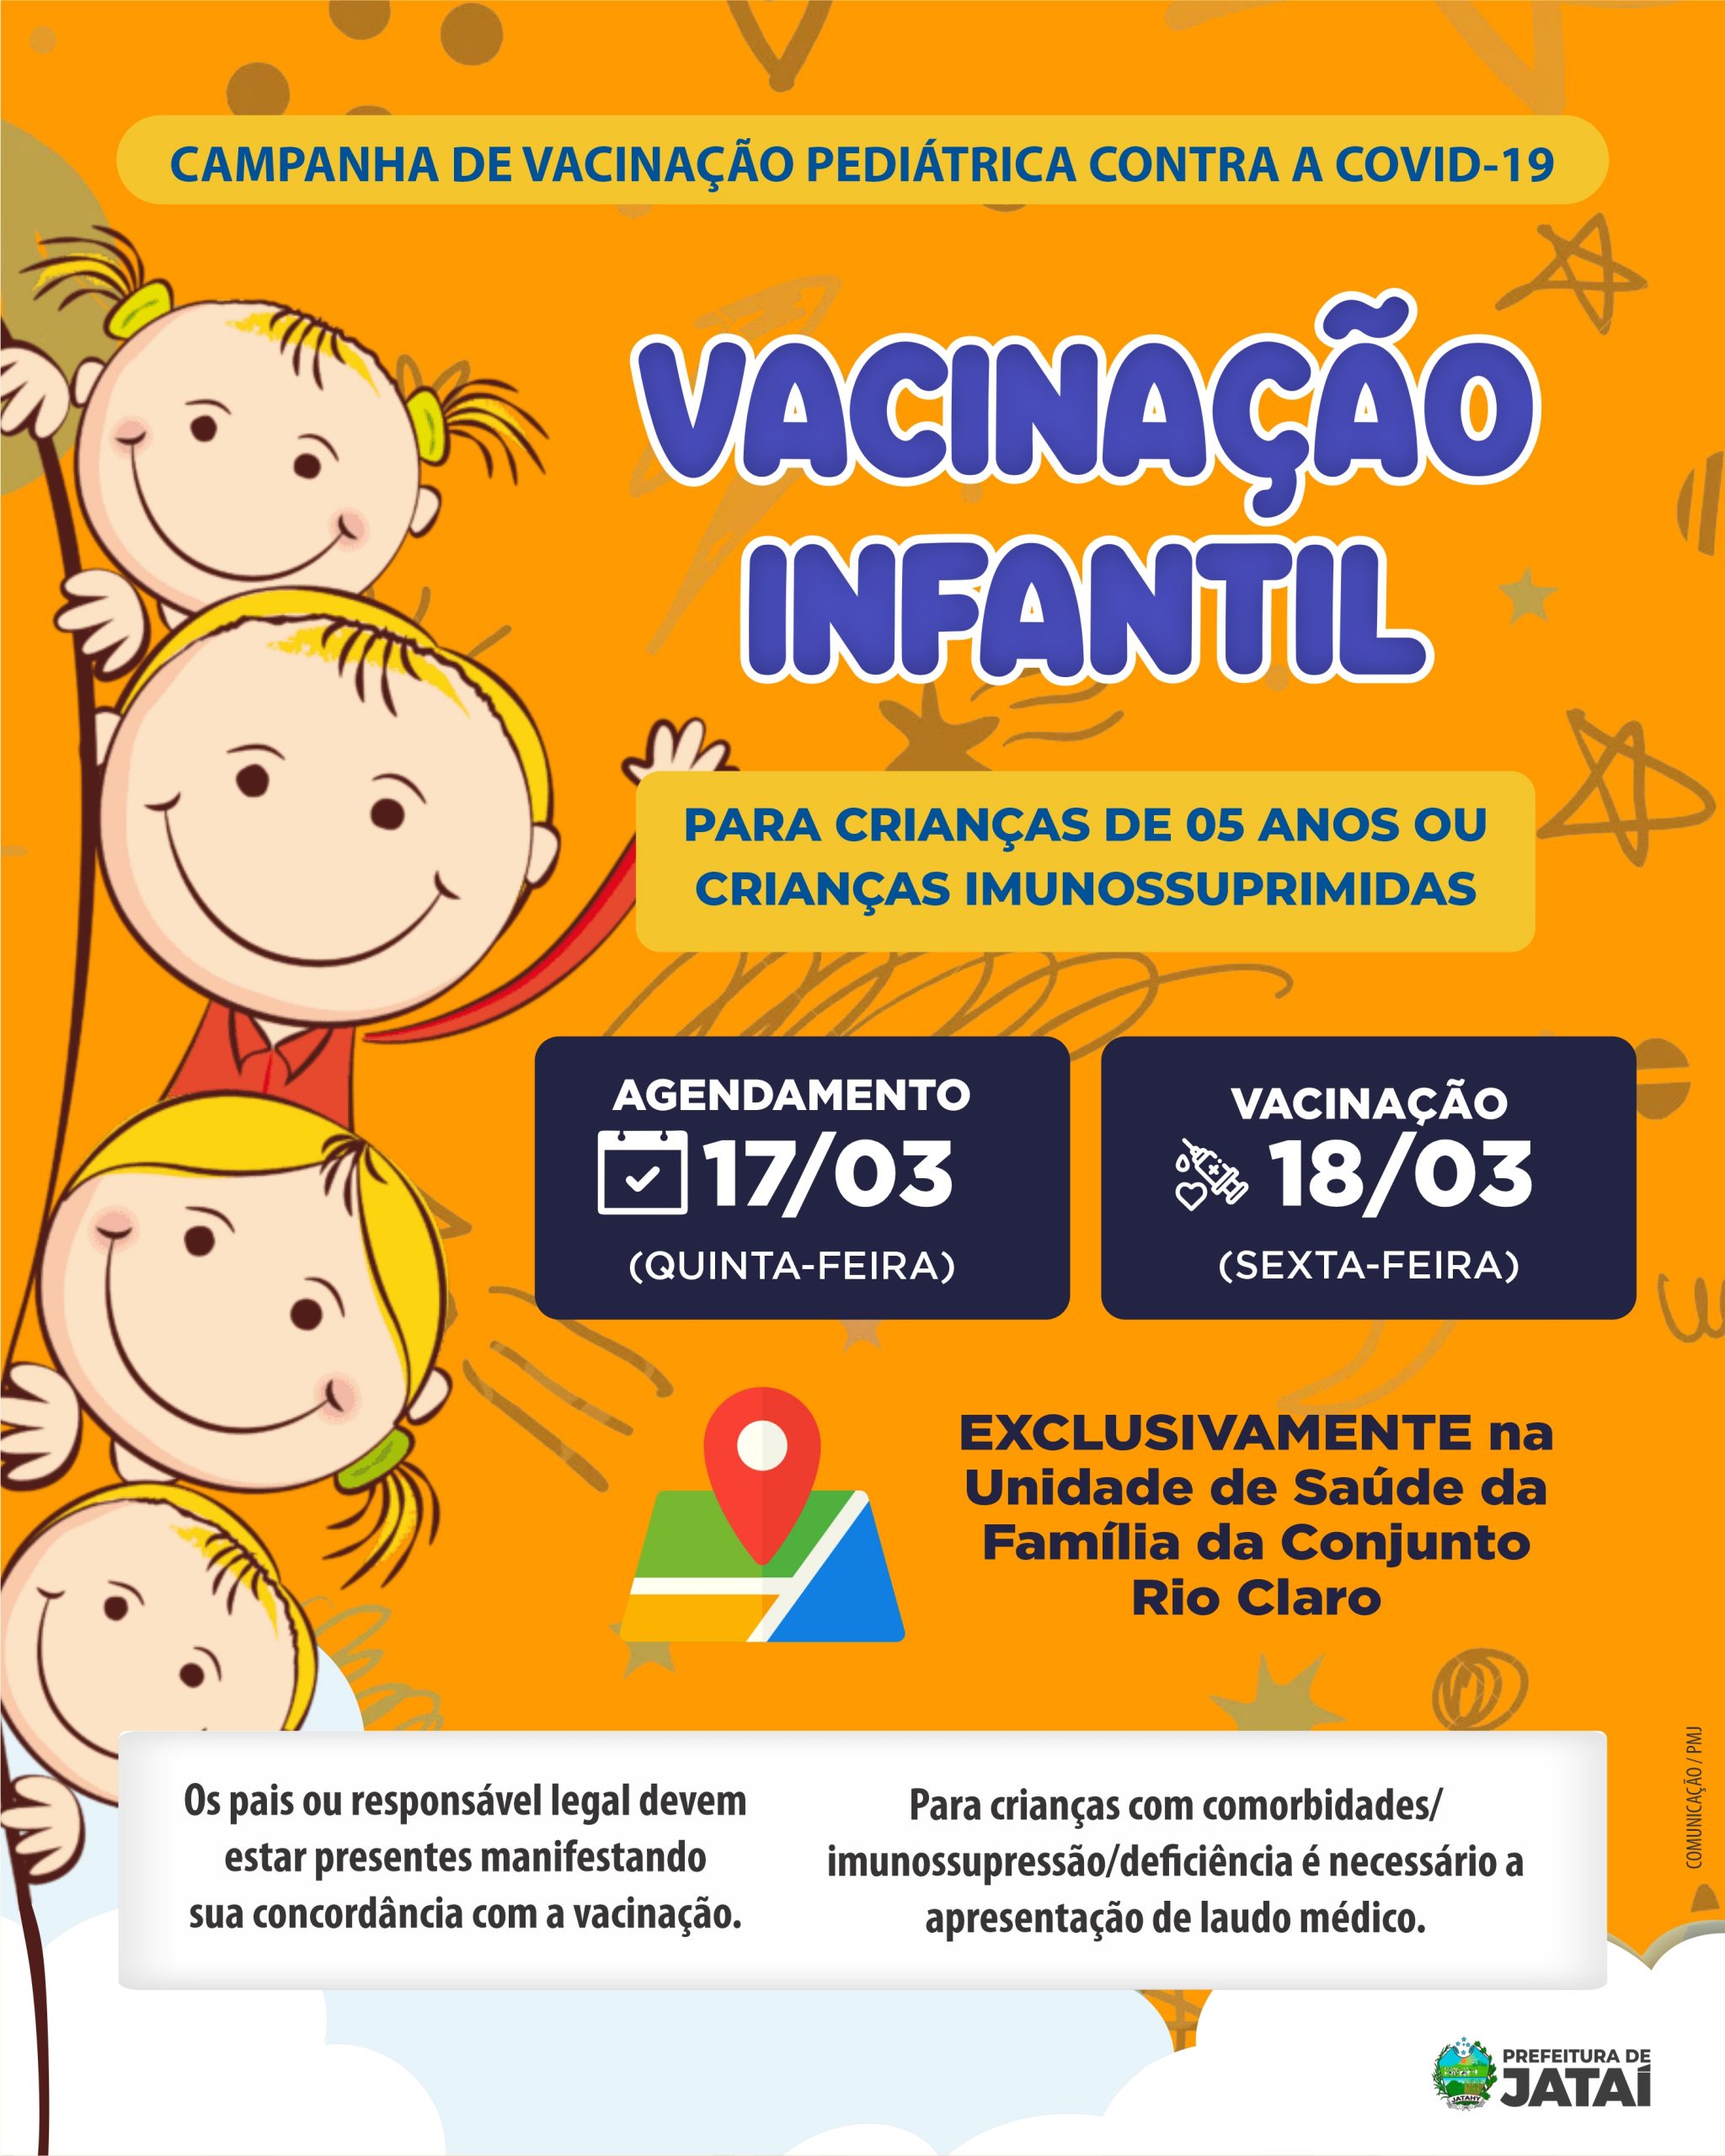 Coleção Folha apresenta 30 animais brasileiros a crianças - 18/03